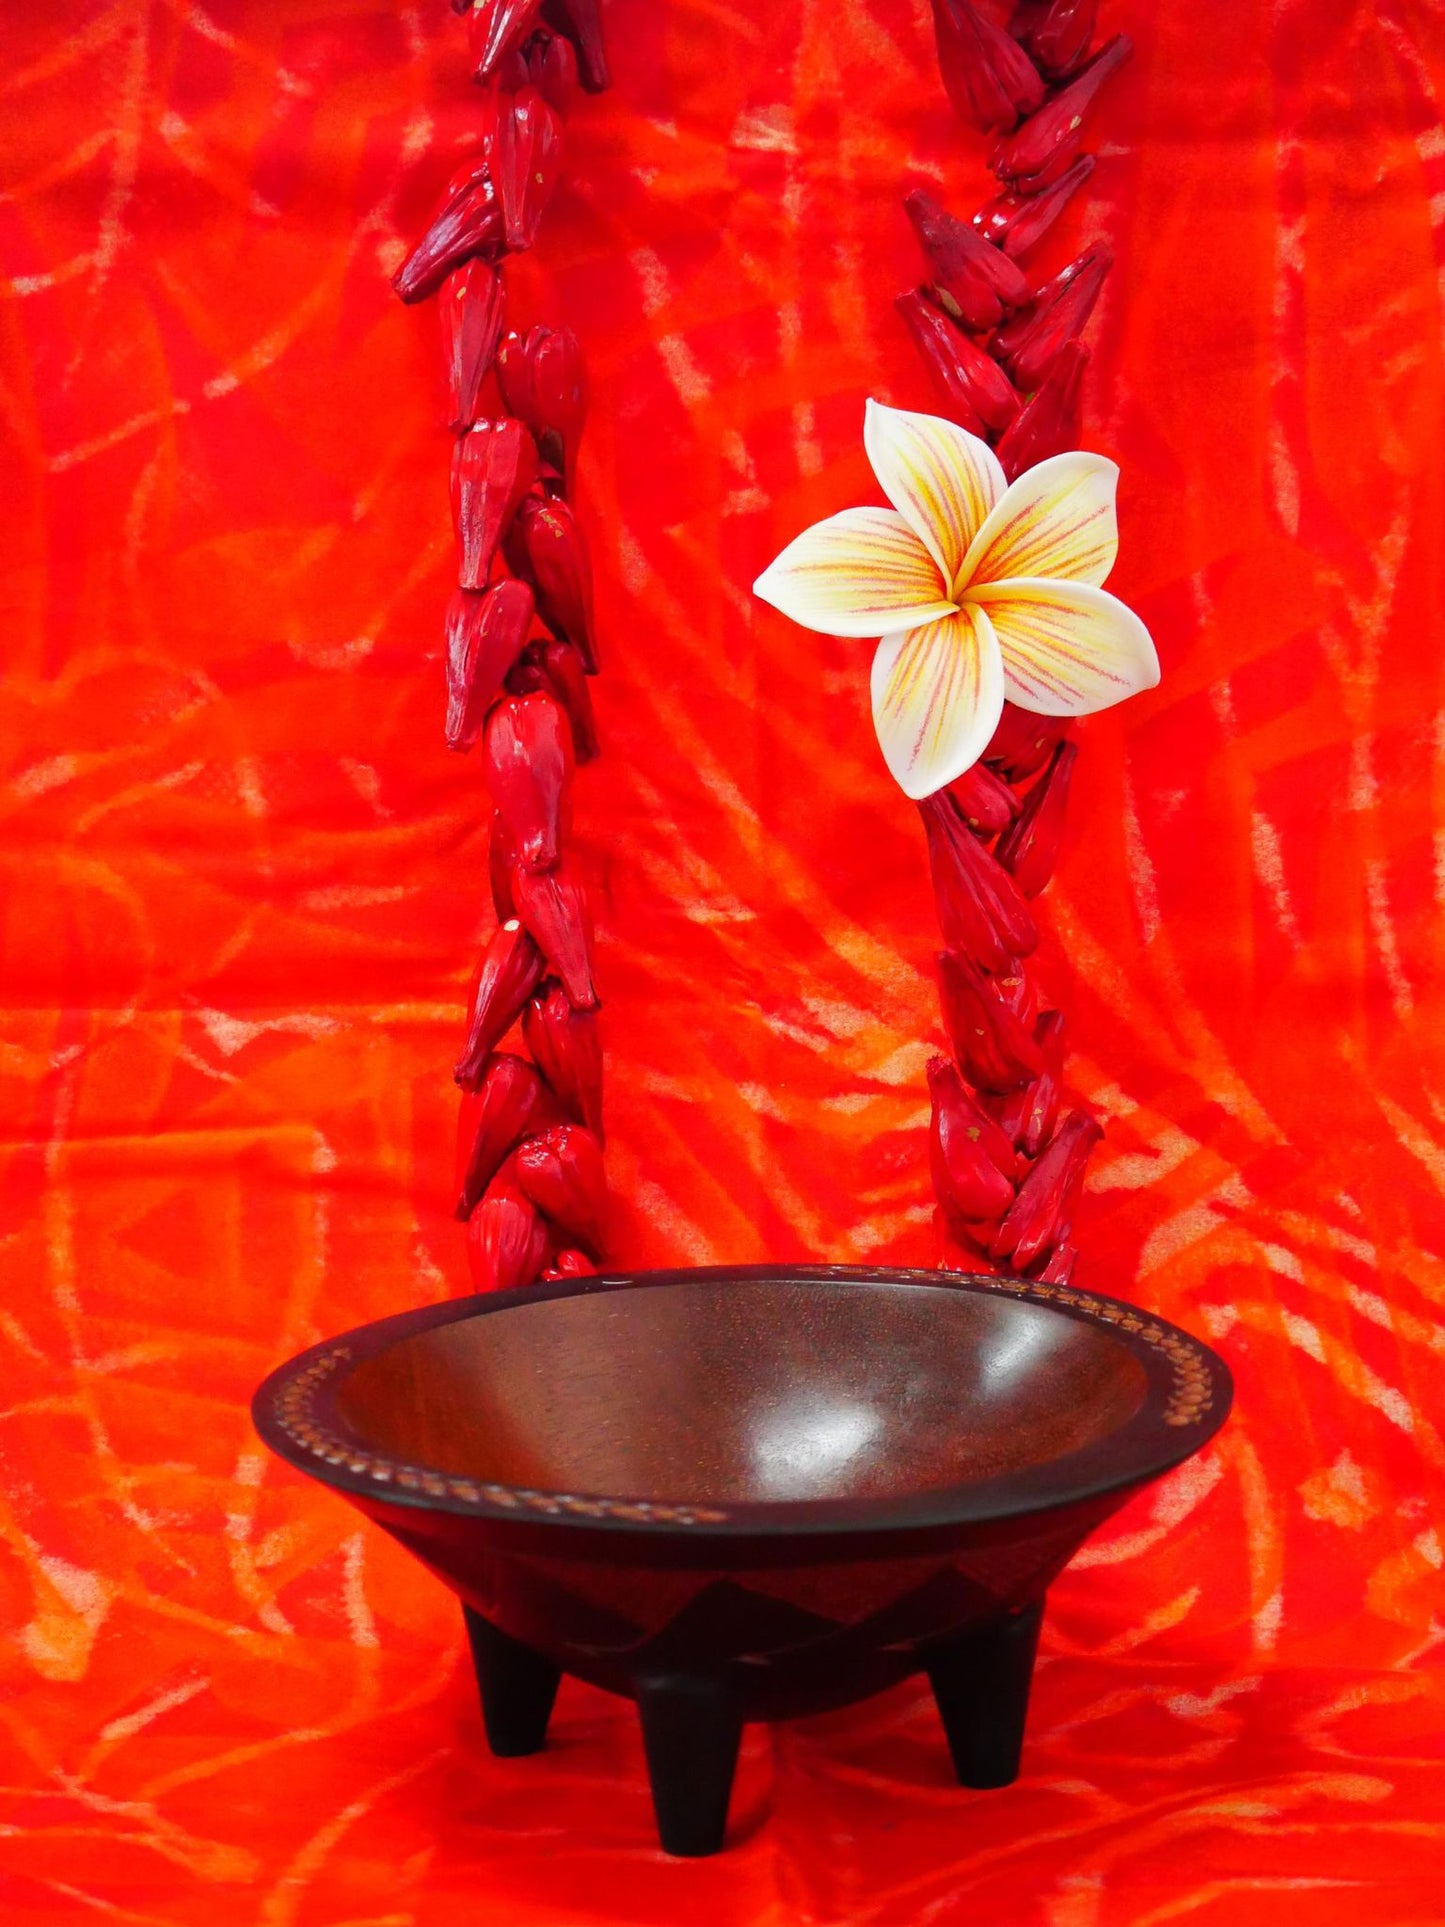 Samoan Tanoa Bowl (7 inch)